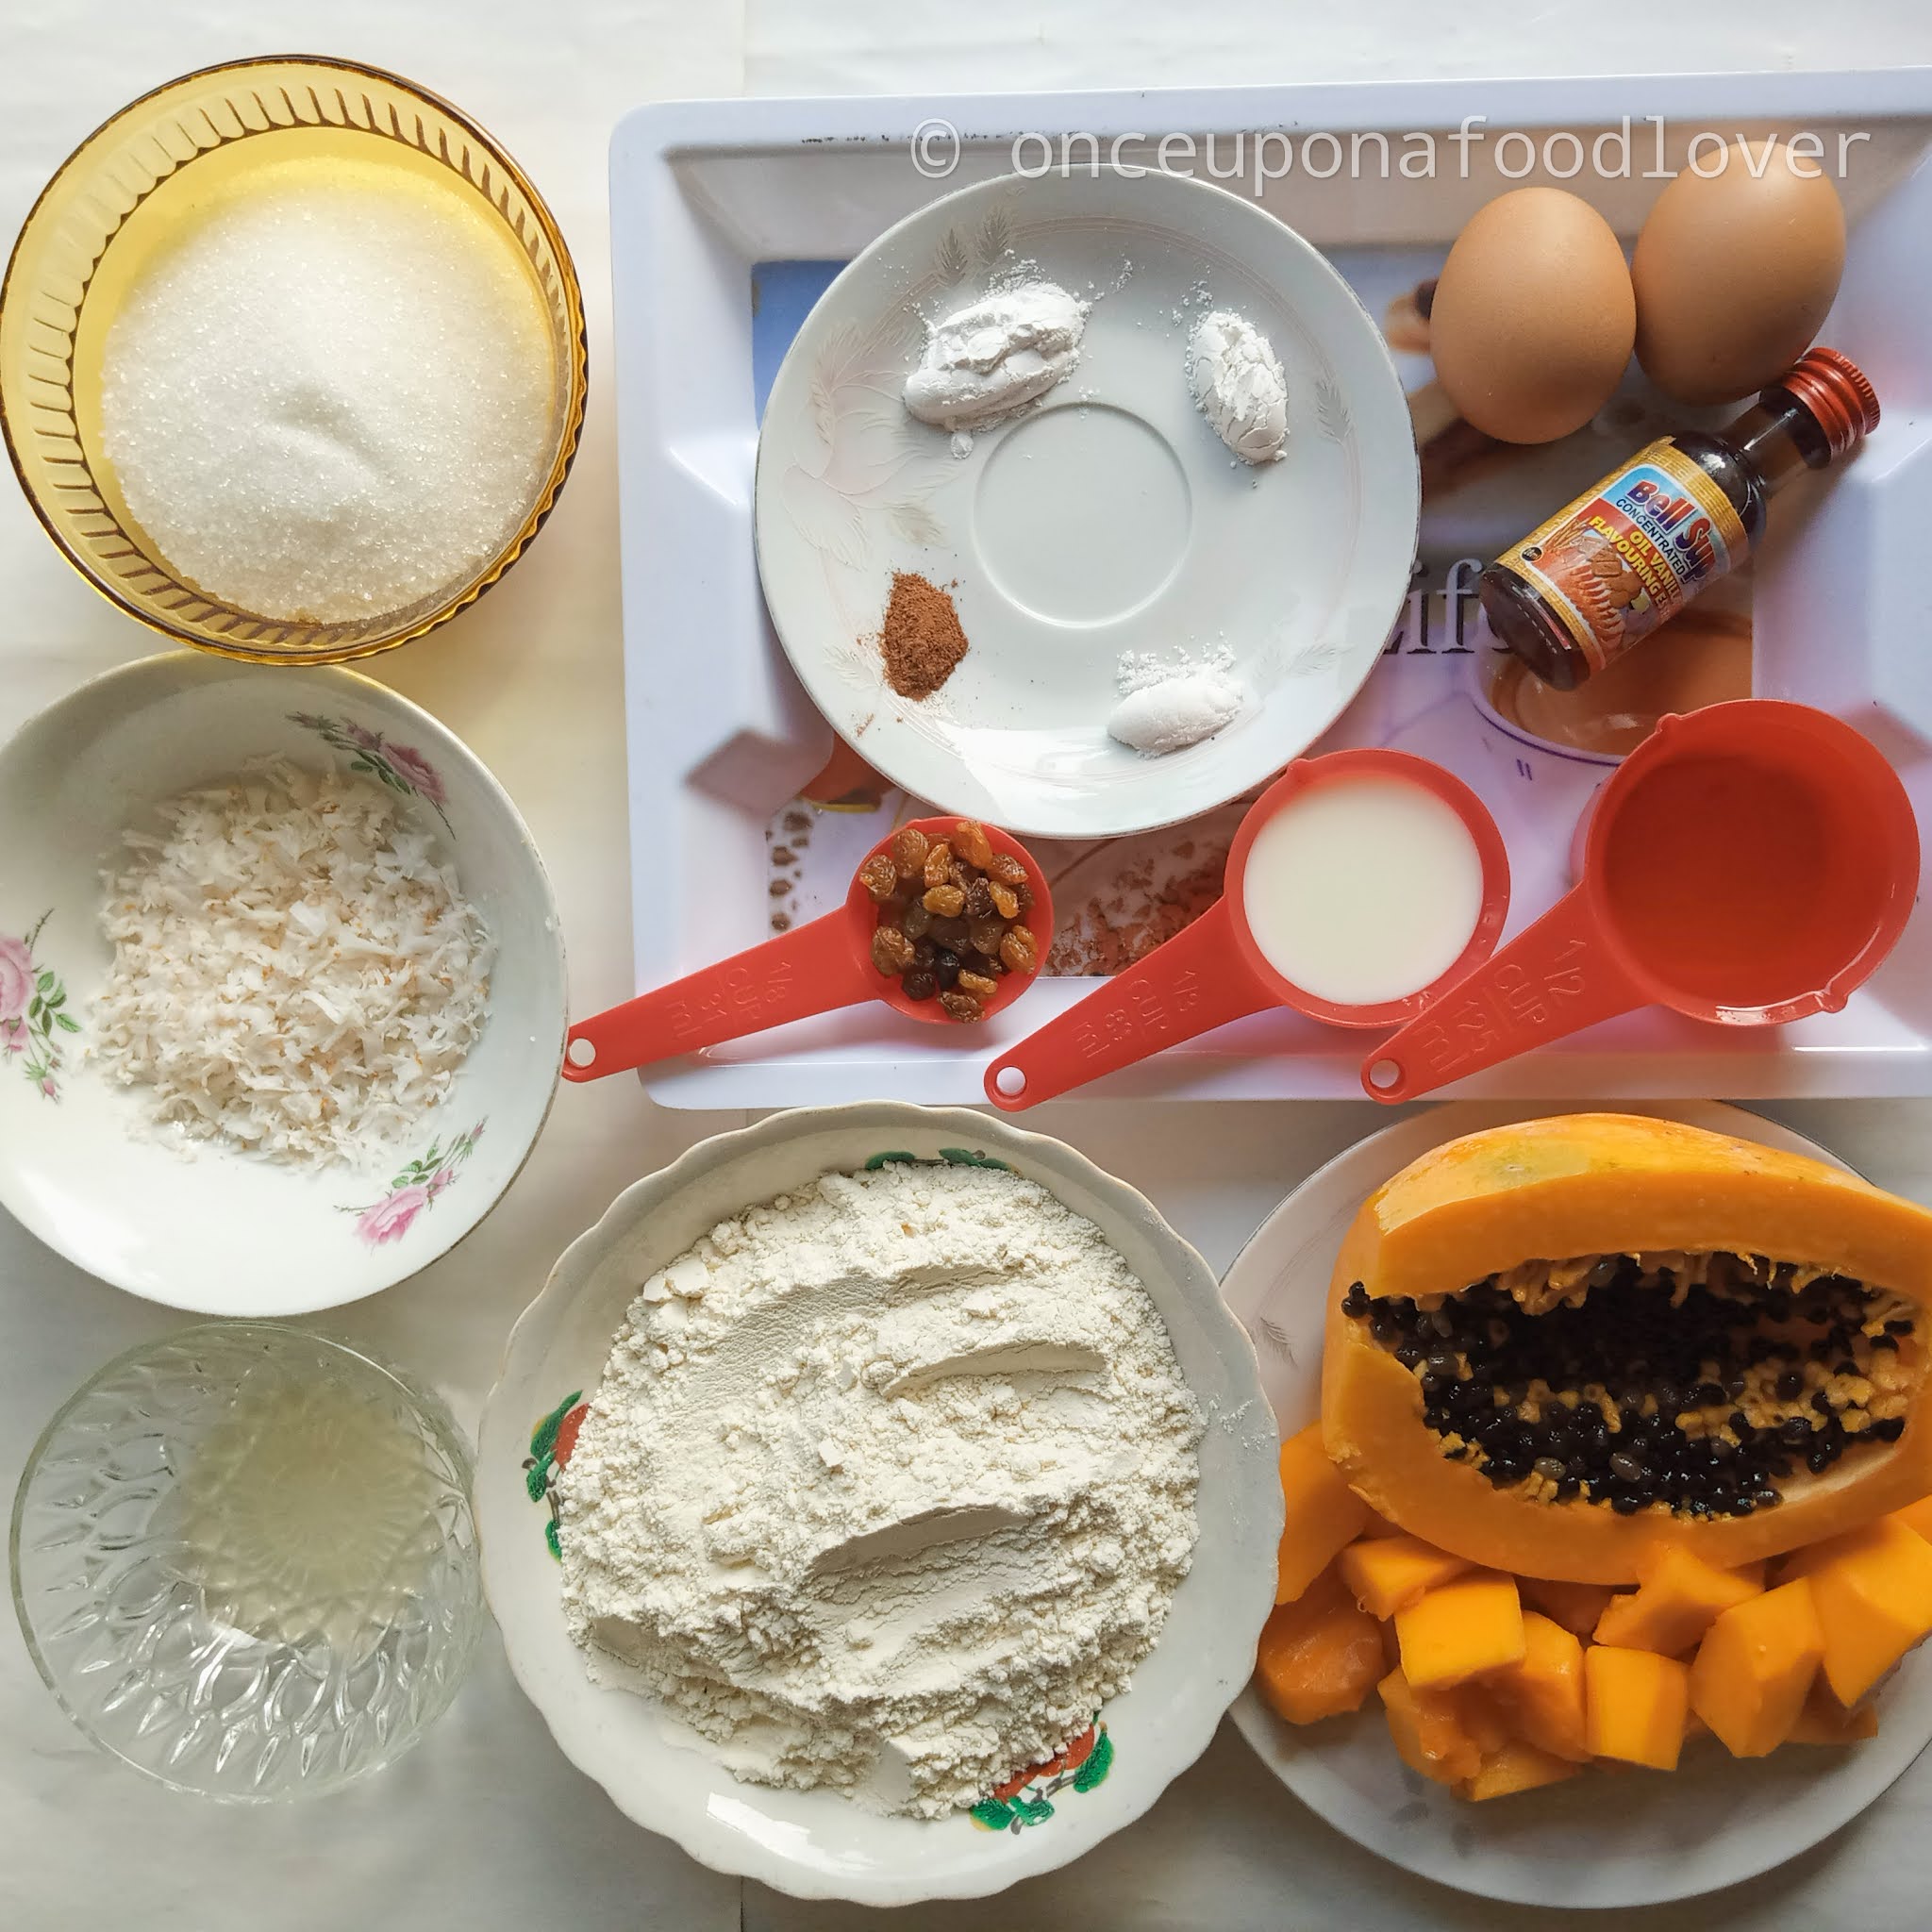 Ingredients for pawpaw/papaya cake